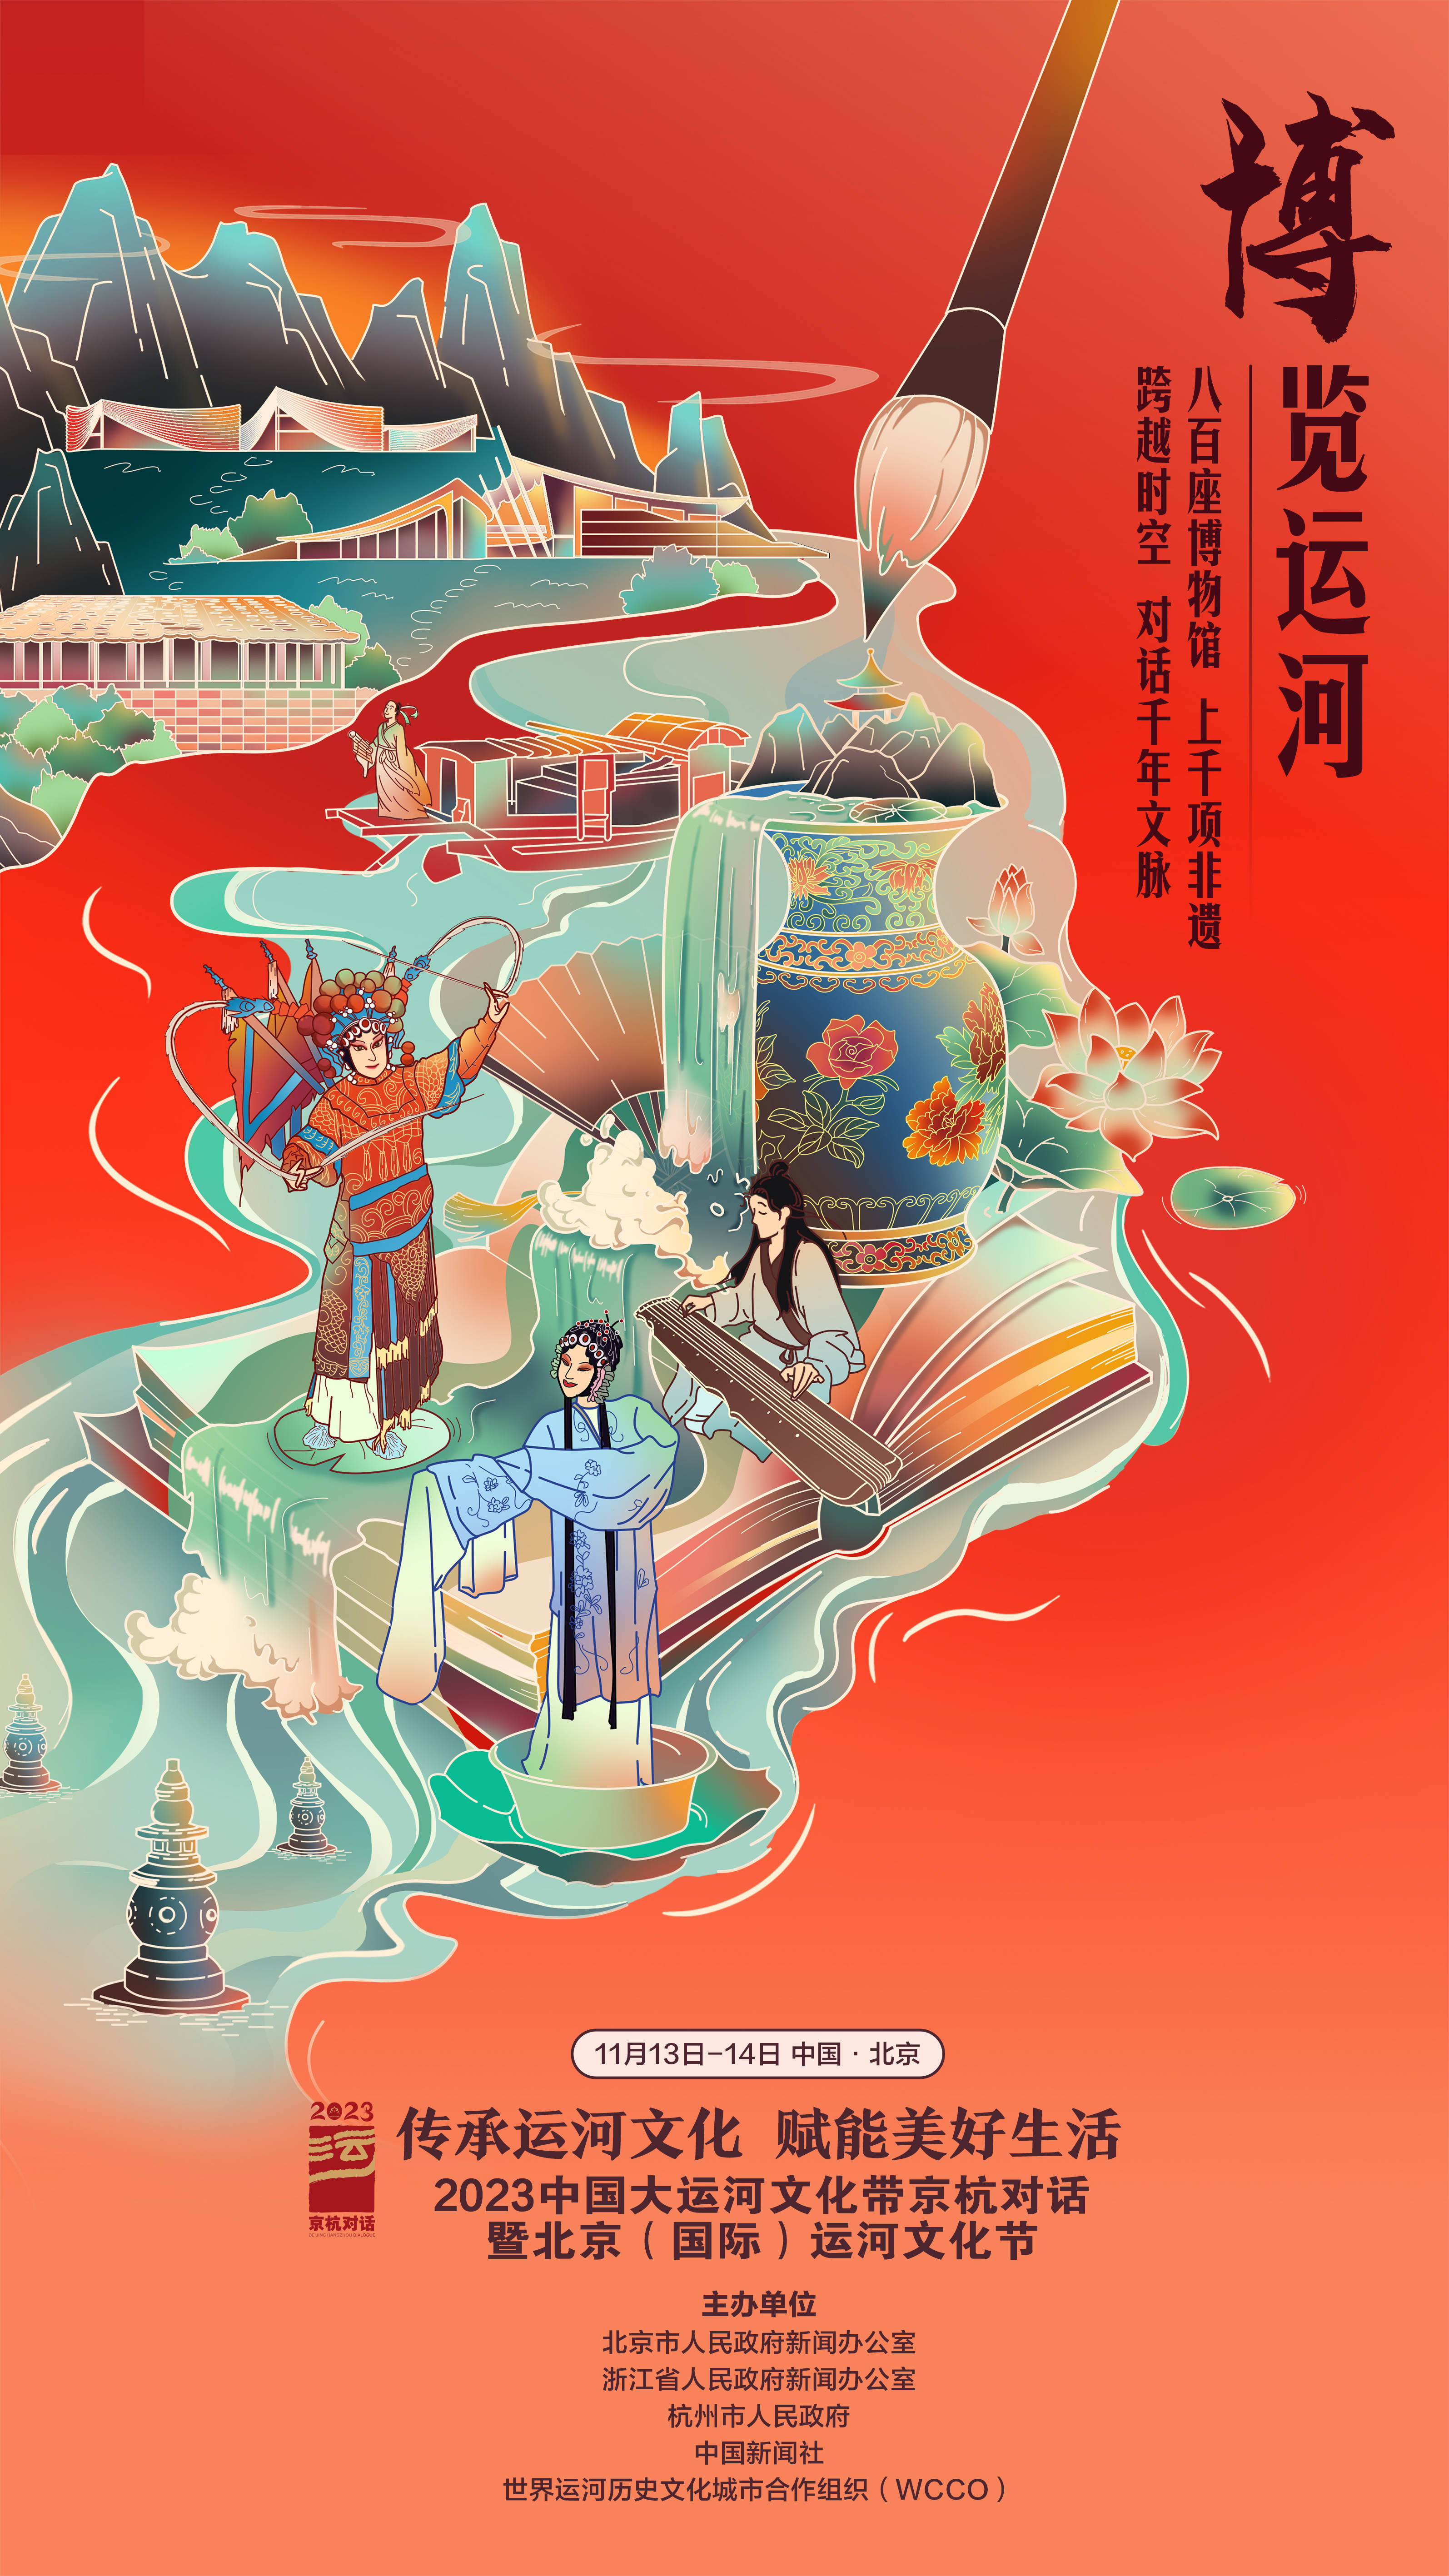 续写千年运河古风今韵 2023京杭对话暨运河文化节在京开幕